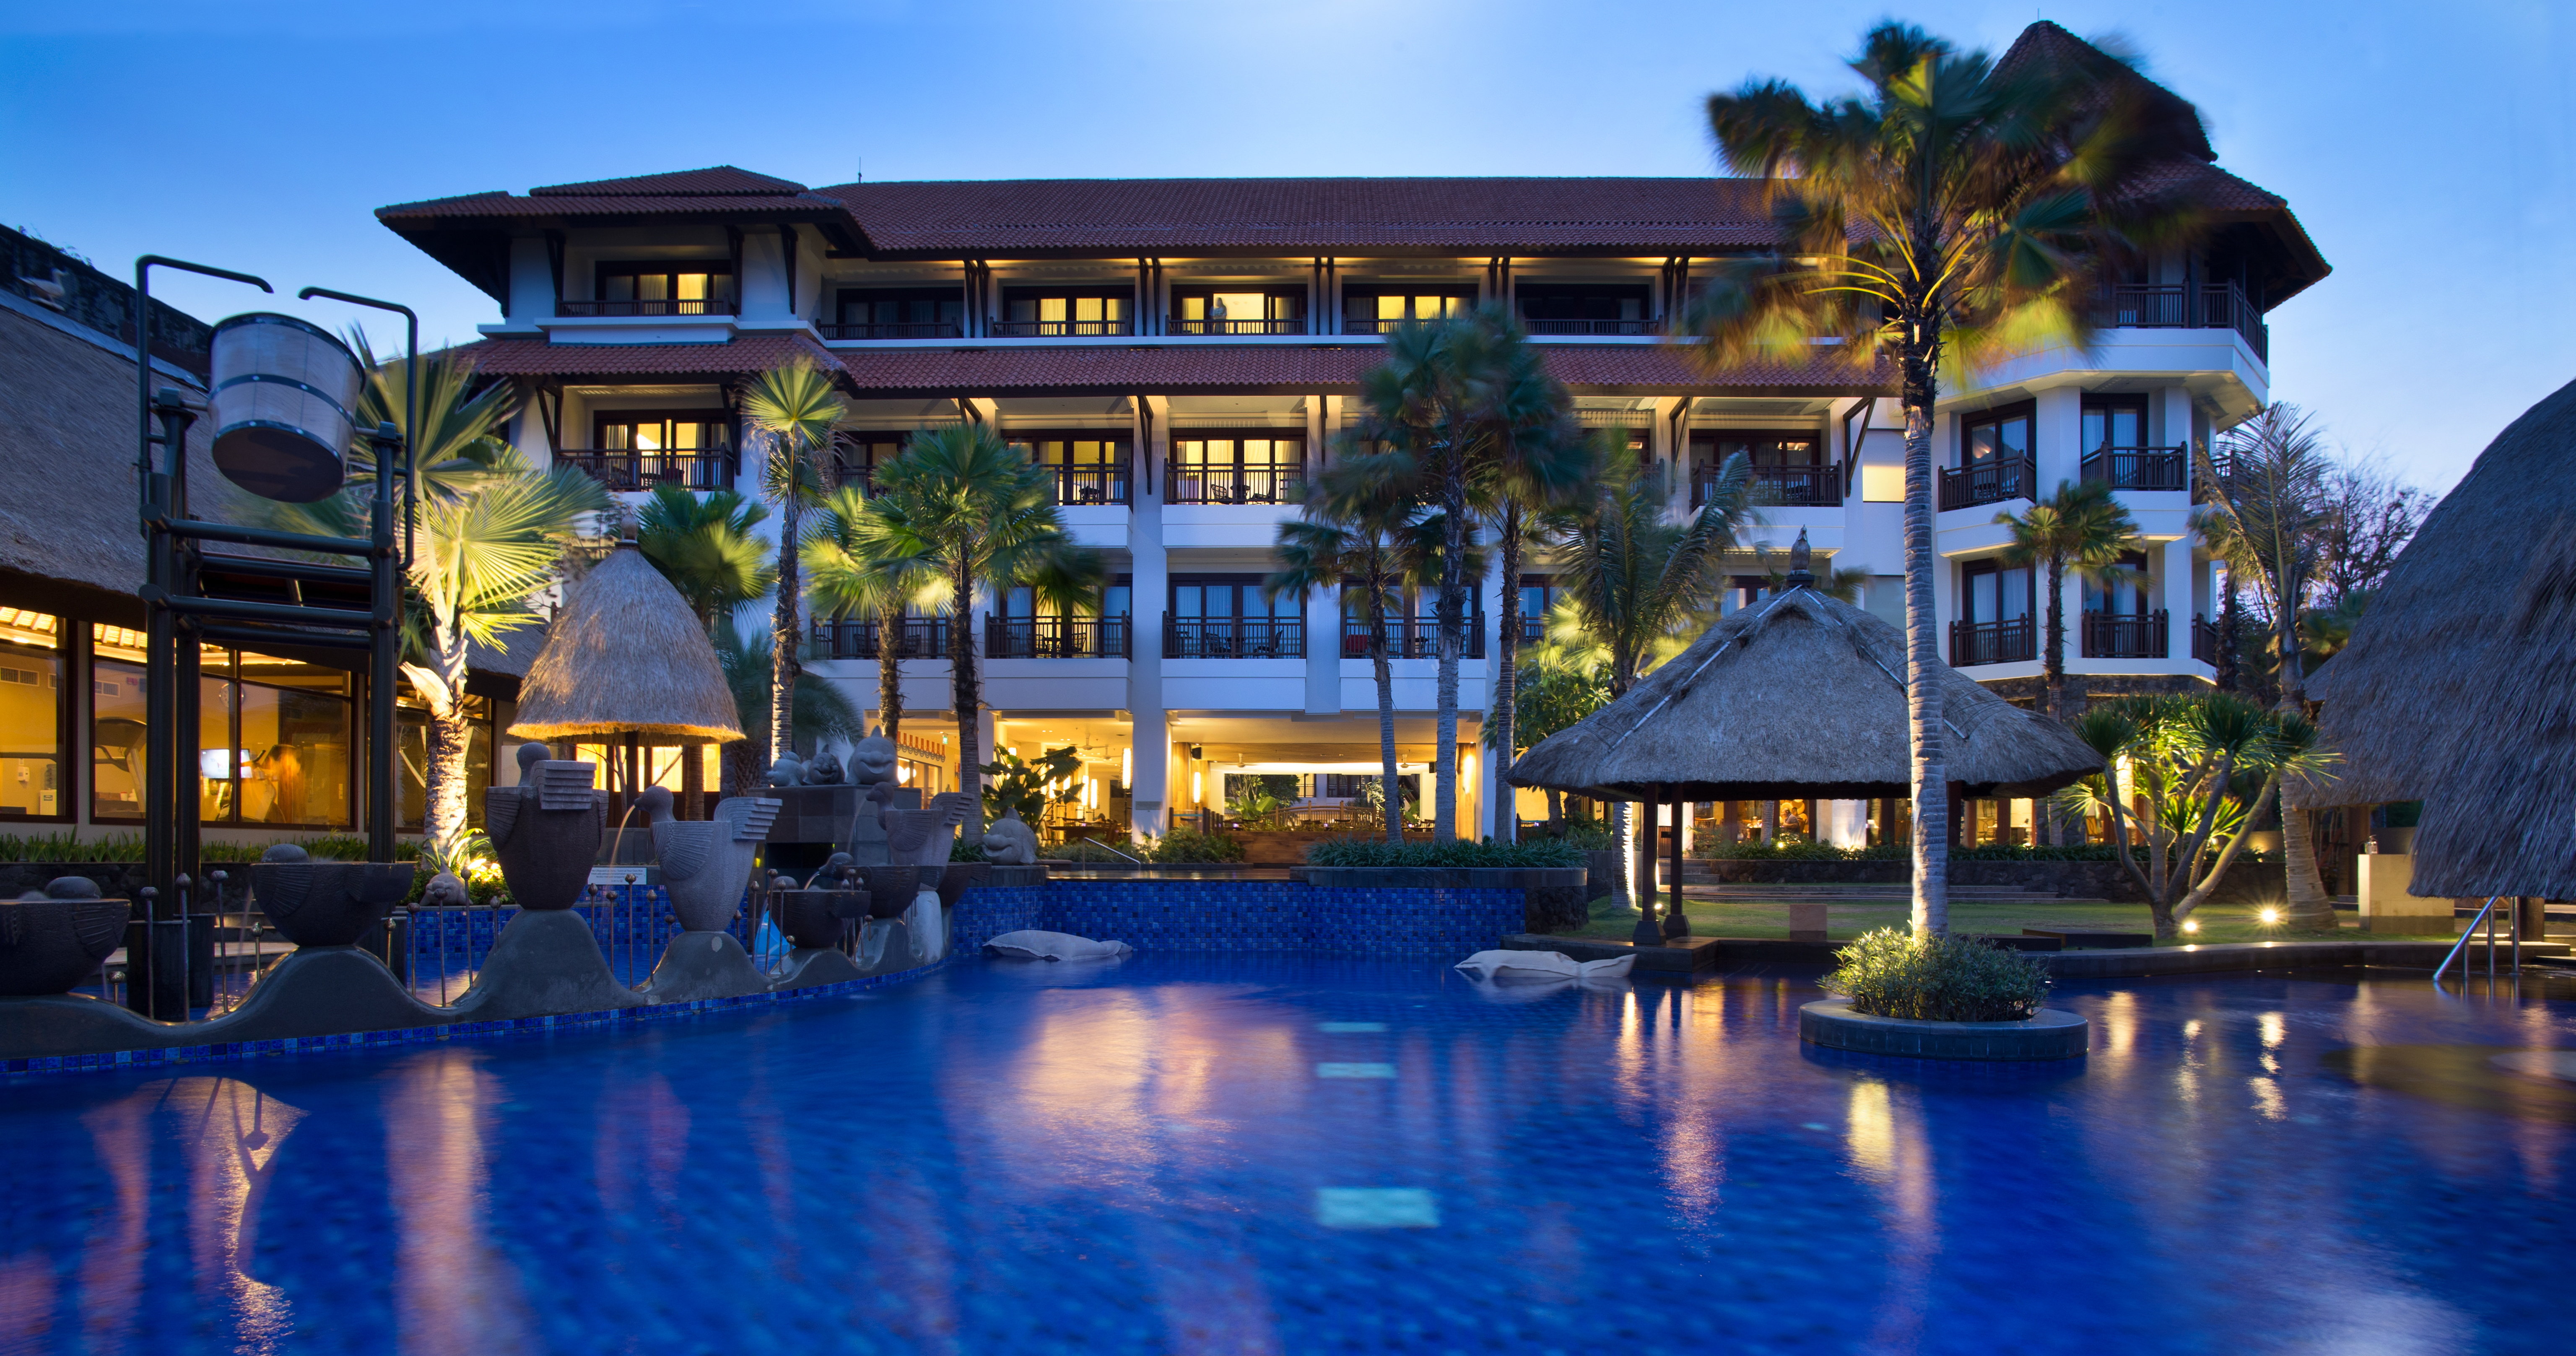 Holiday Inn Resort Bali Benoa- Badung, Bali Island, Indonesia Hotels